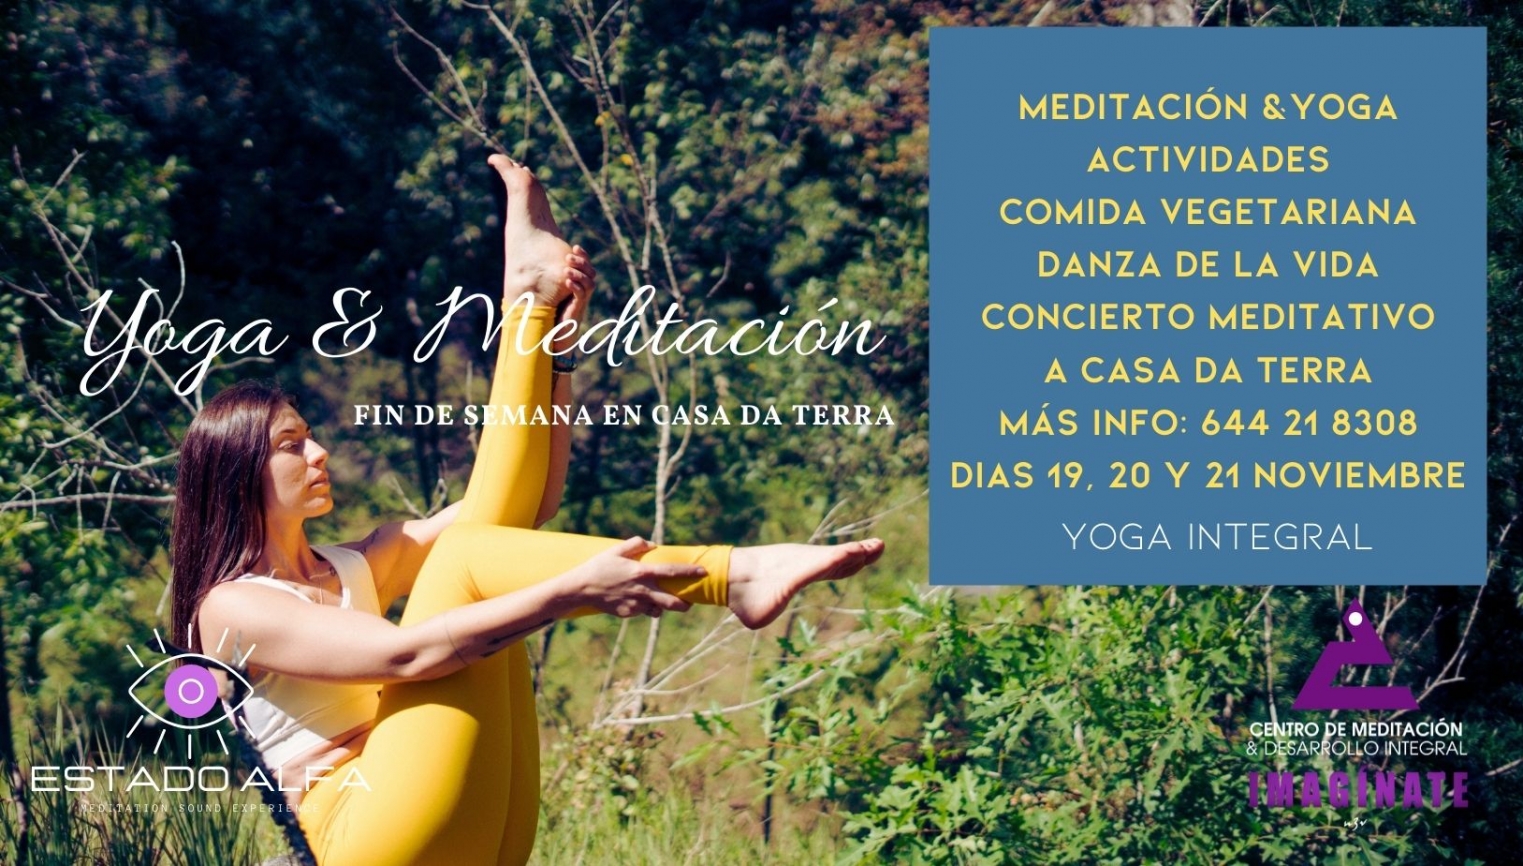 Retiro de Yoga Integral & Meditación, Danza y concierto Meditativo, comida vegana , paseo consciente por la naturaleza. - foto 1/1